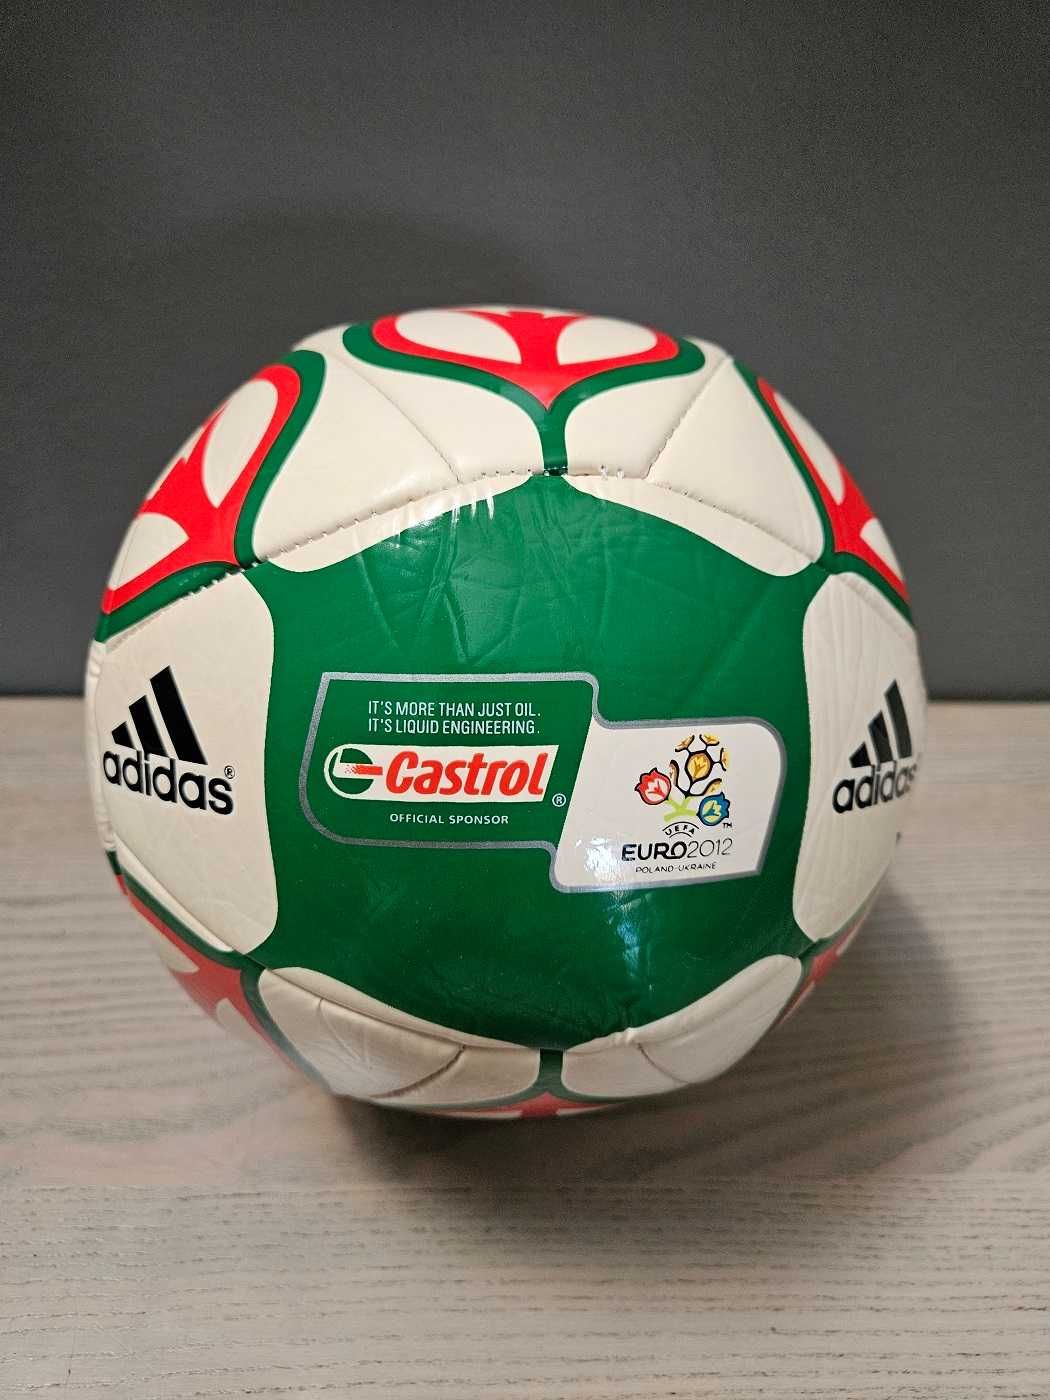 piłka nożna adidas castrol EURO 2012 kolekcjonerska limitowana edycja